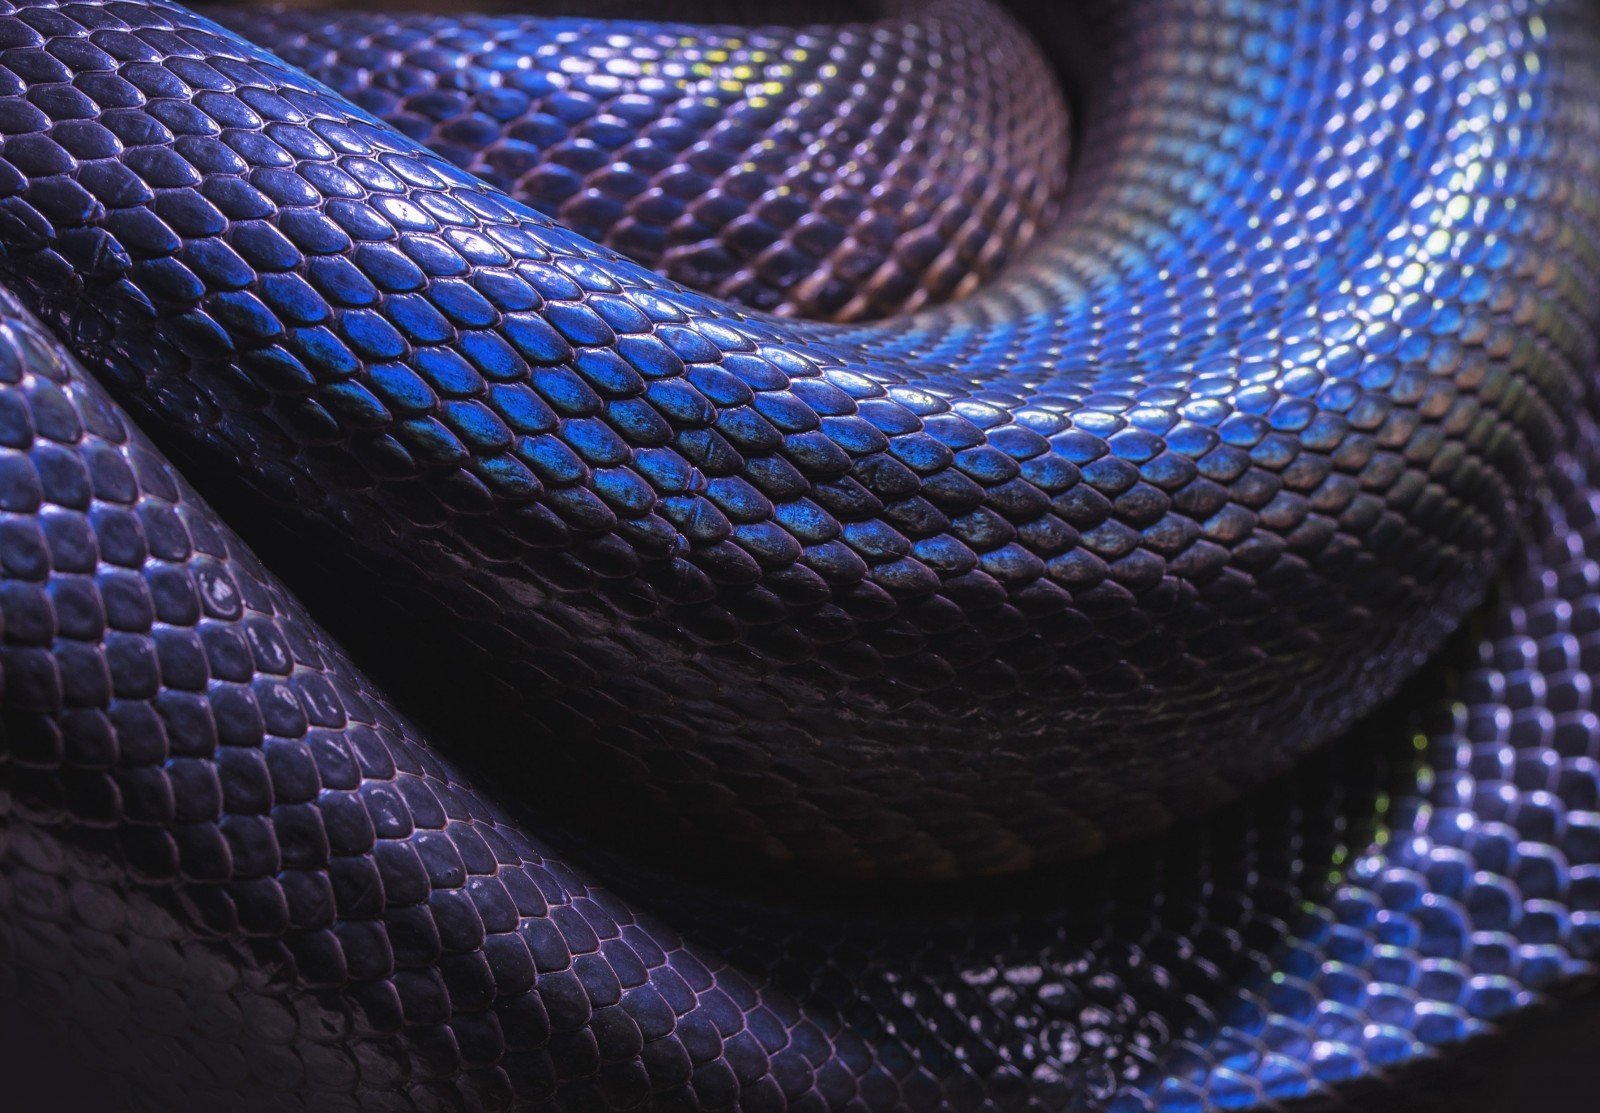 Кожа кобры. Змеиная чешуя питон. Змея Тайпан голубая. Змея Тайпан синяя. Ядовитая змея Тайпан голубая.